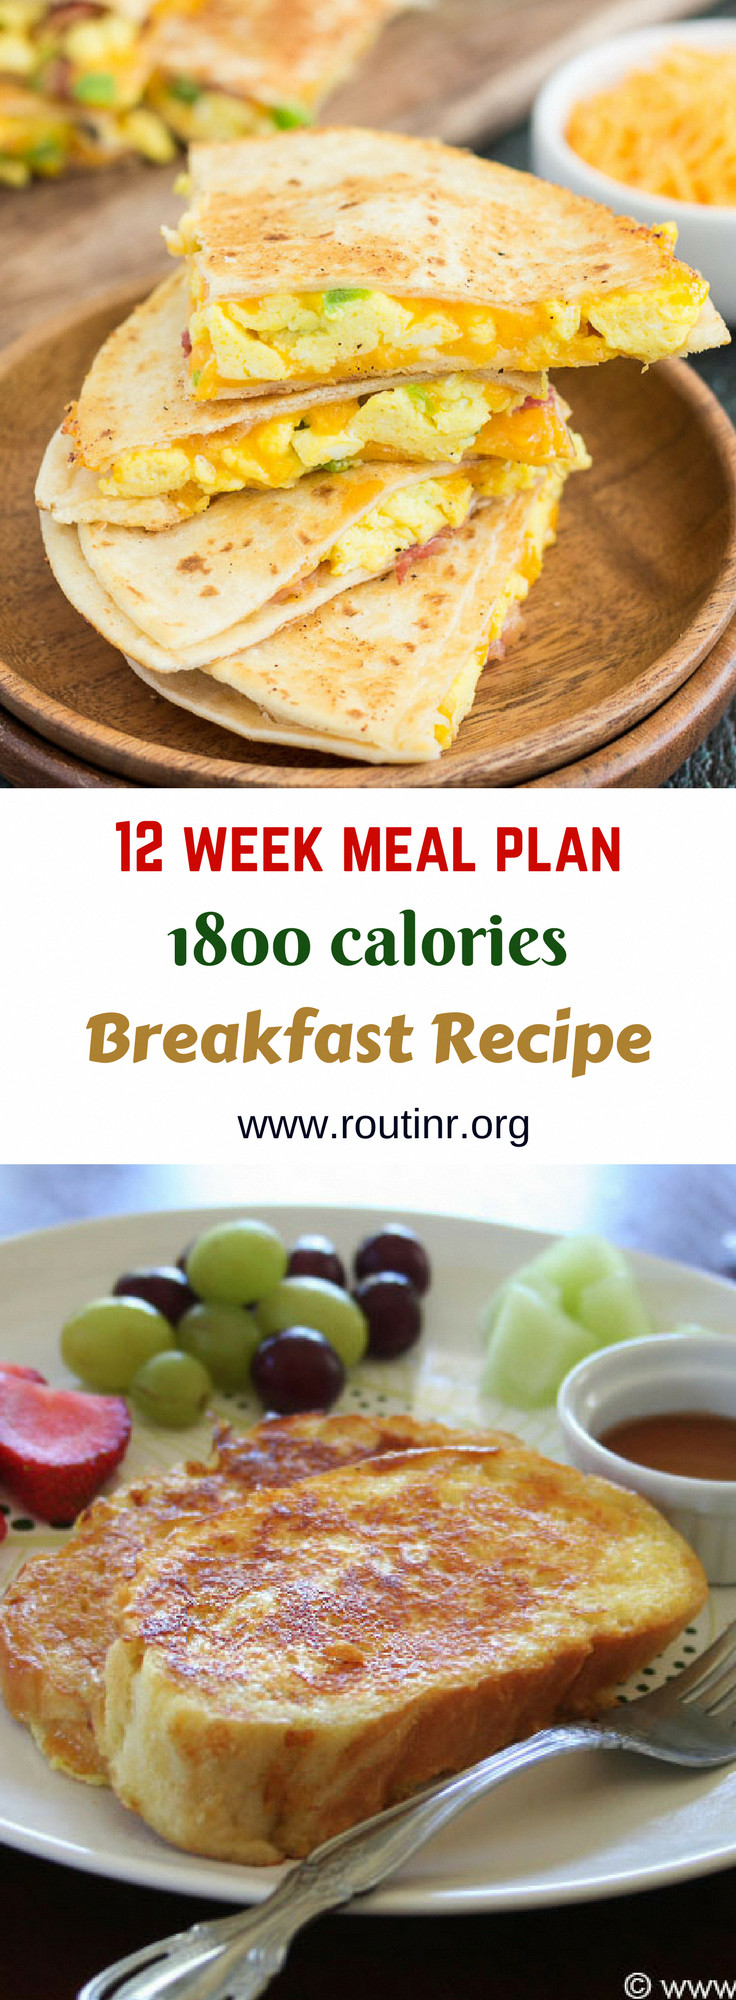 Ketosis Diet Plan 12 Weeks
 Keto Meal Plans Keto Routines 12 week meal plan 1800